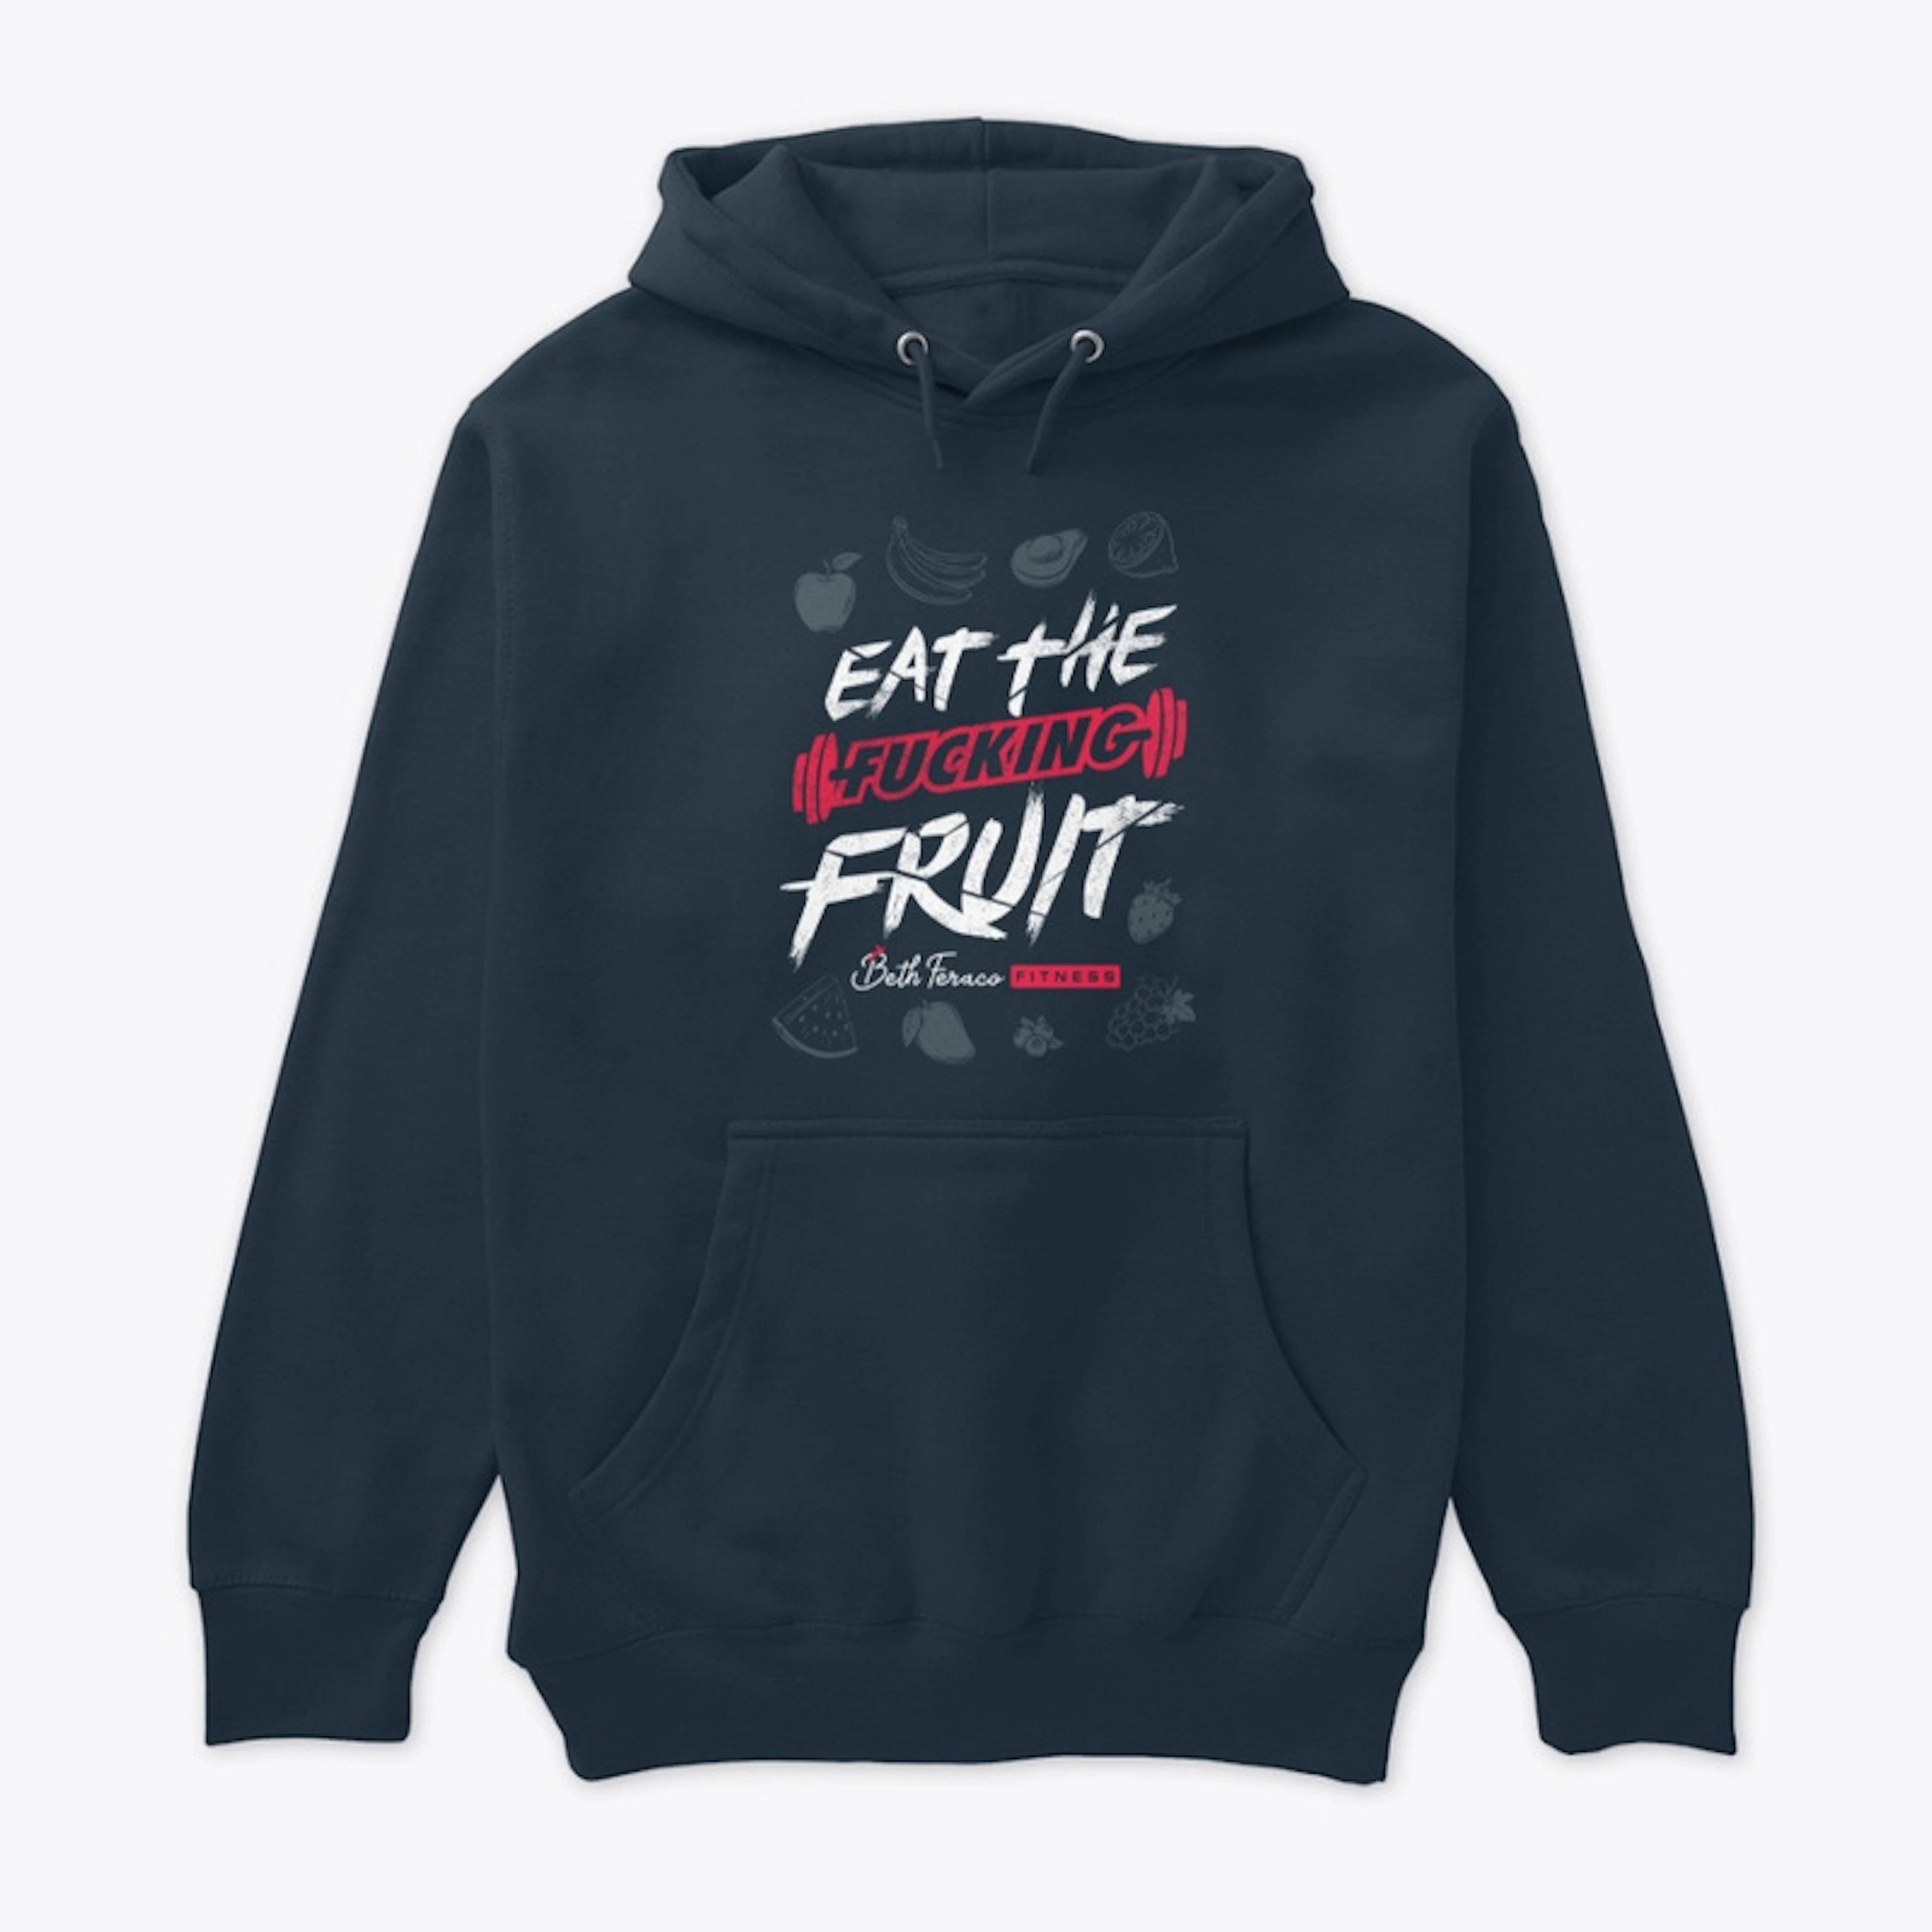 Eat the F#cking Fruit (DARK)